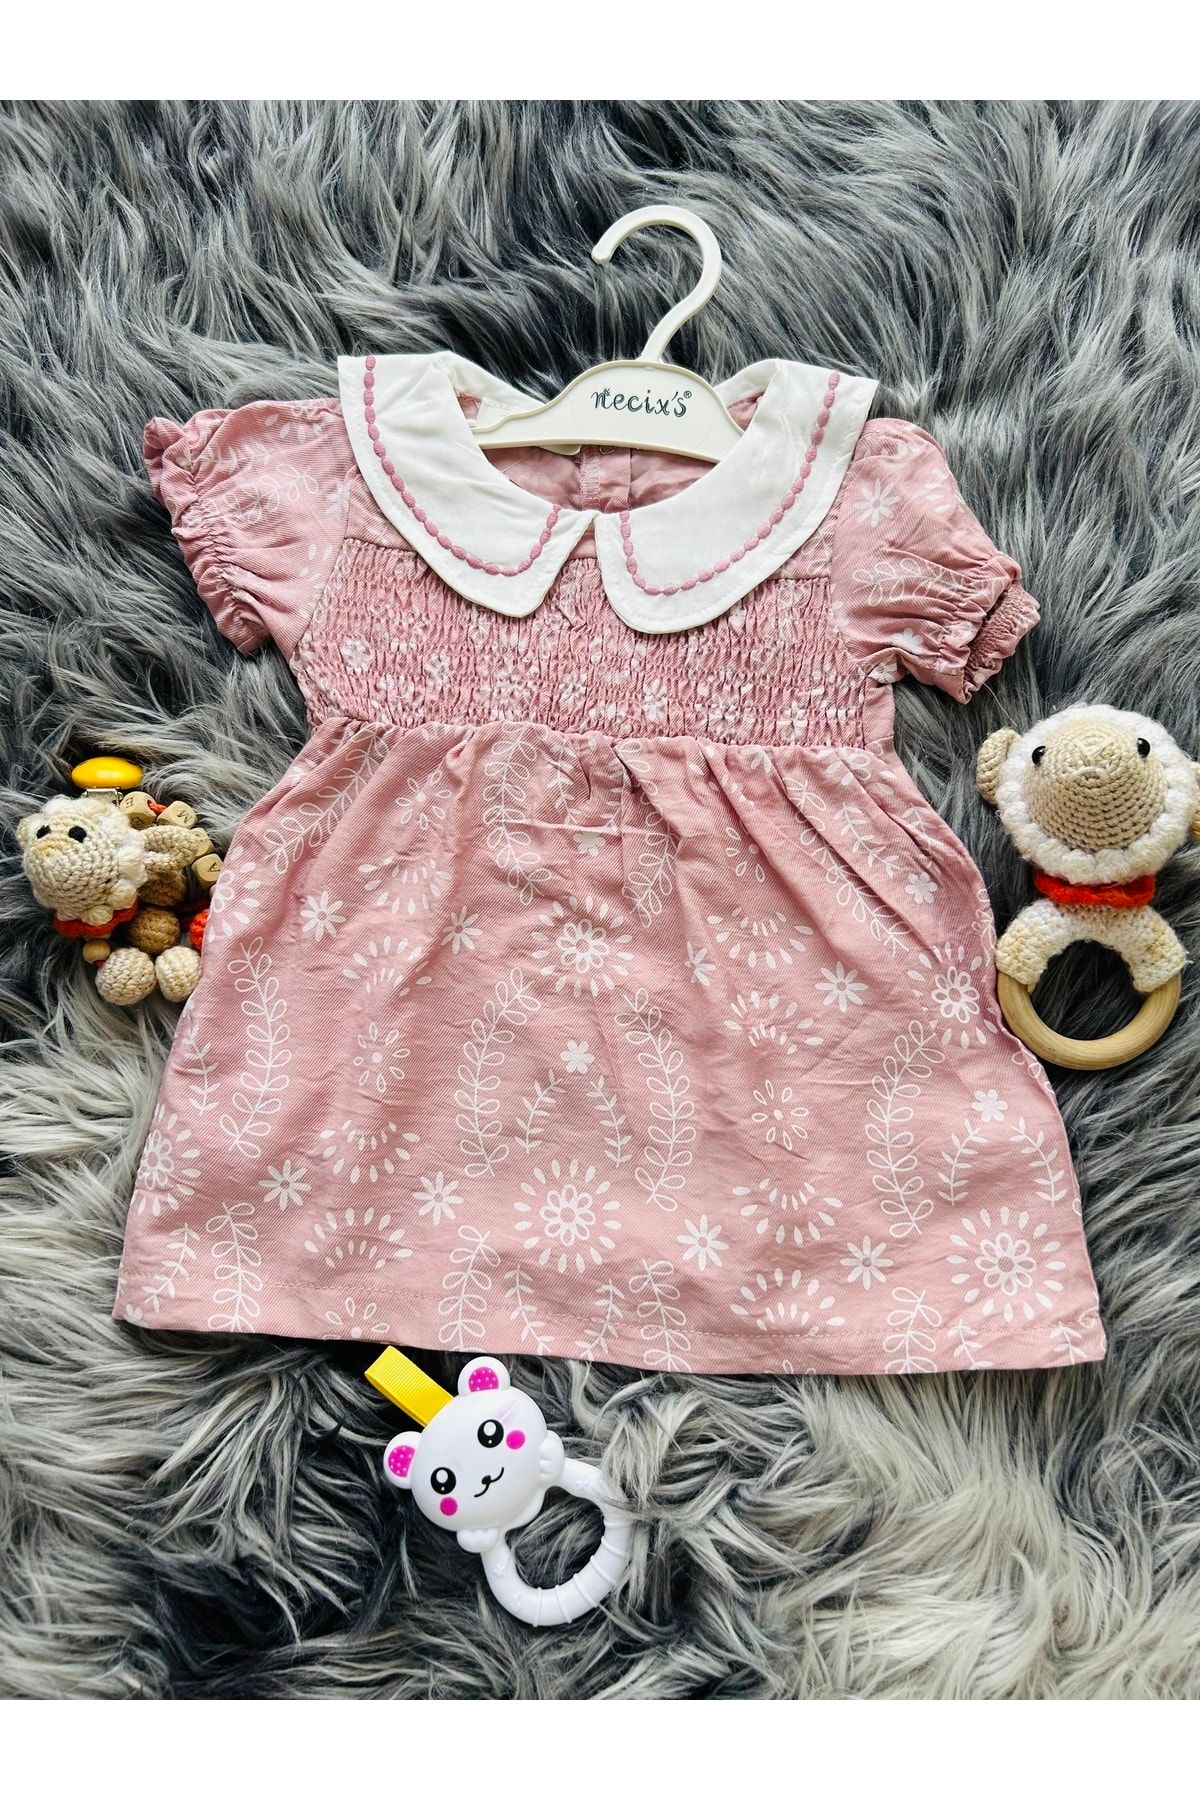 Necix's Kız Bebek Gül Kurusu Yakalı Çiçek Desenli Elbise